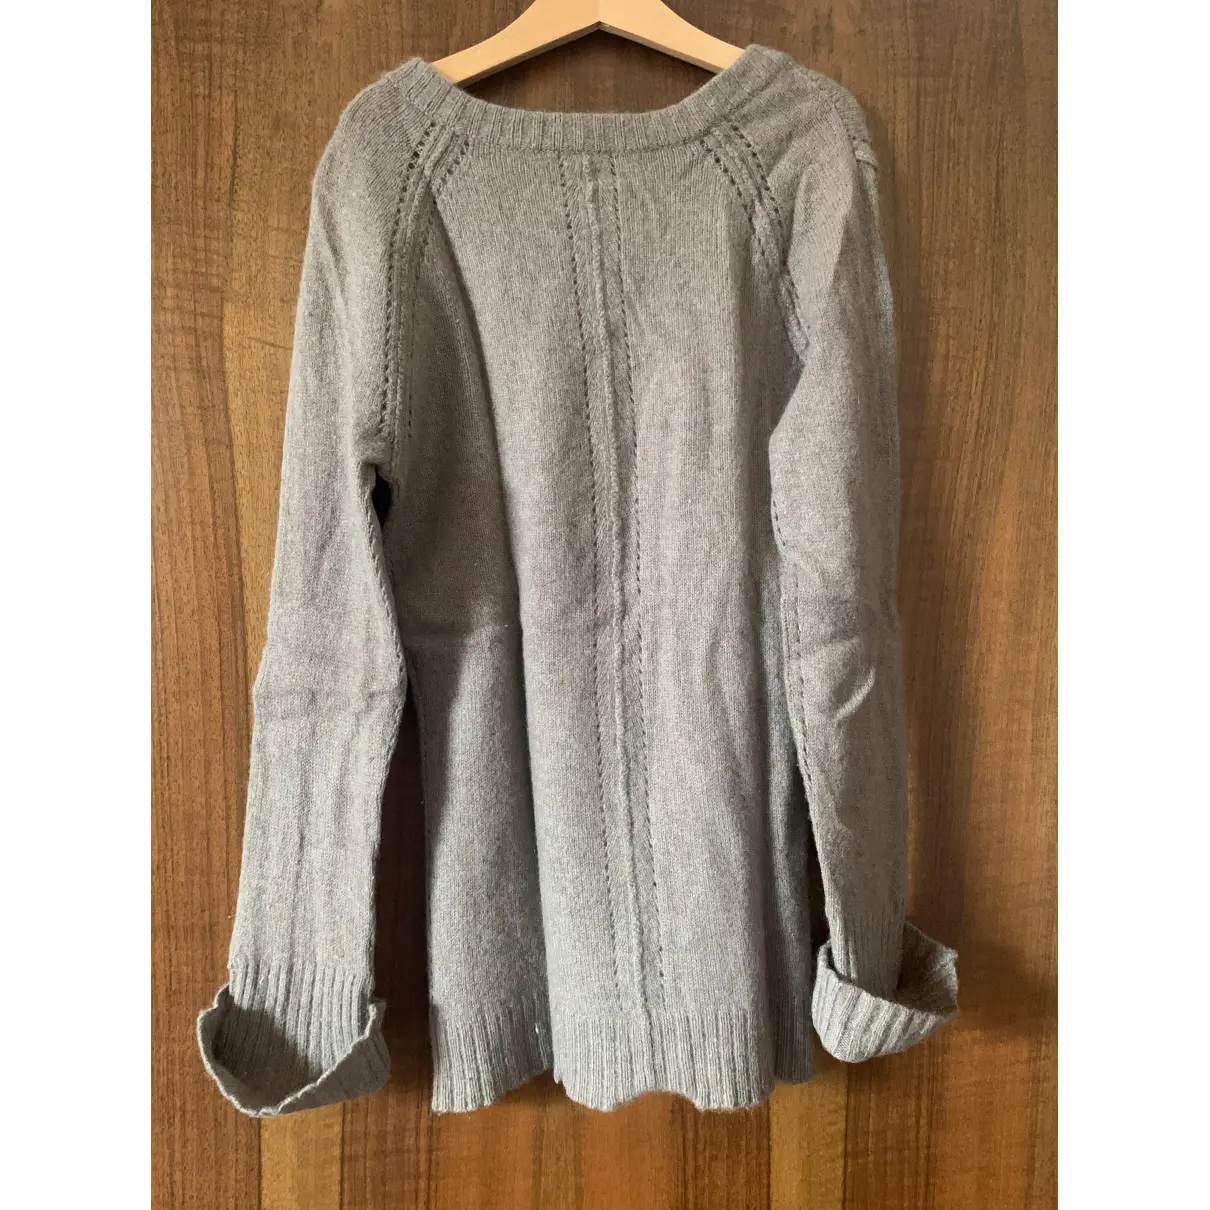 Buy Inhabit Cashmere sweater online